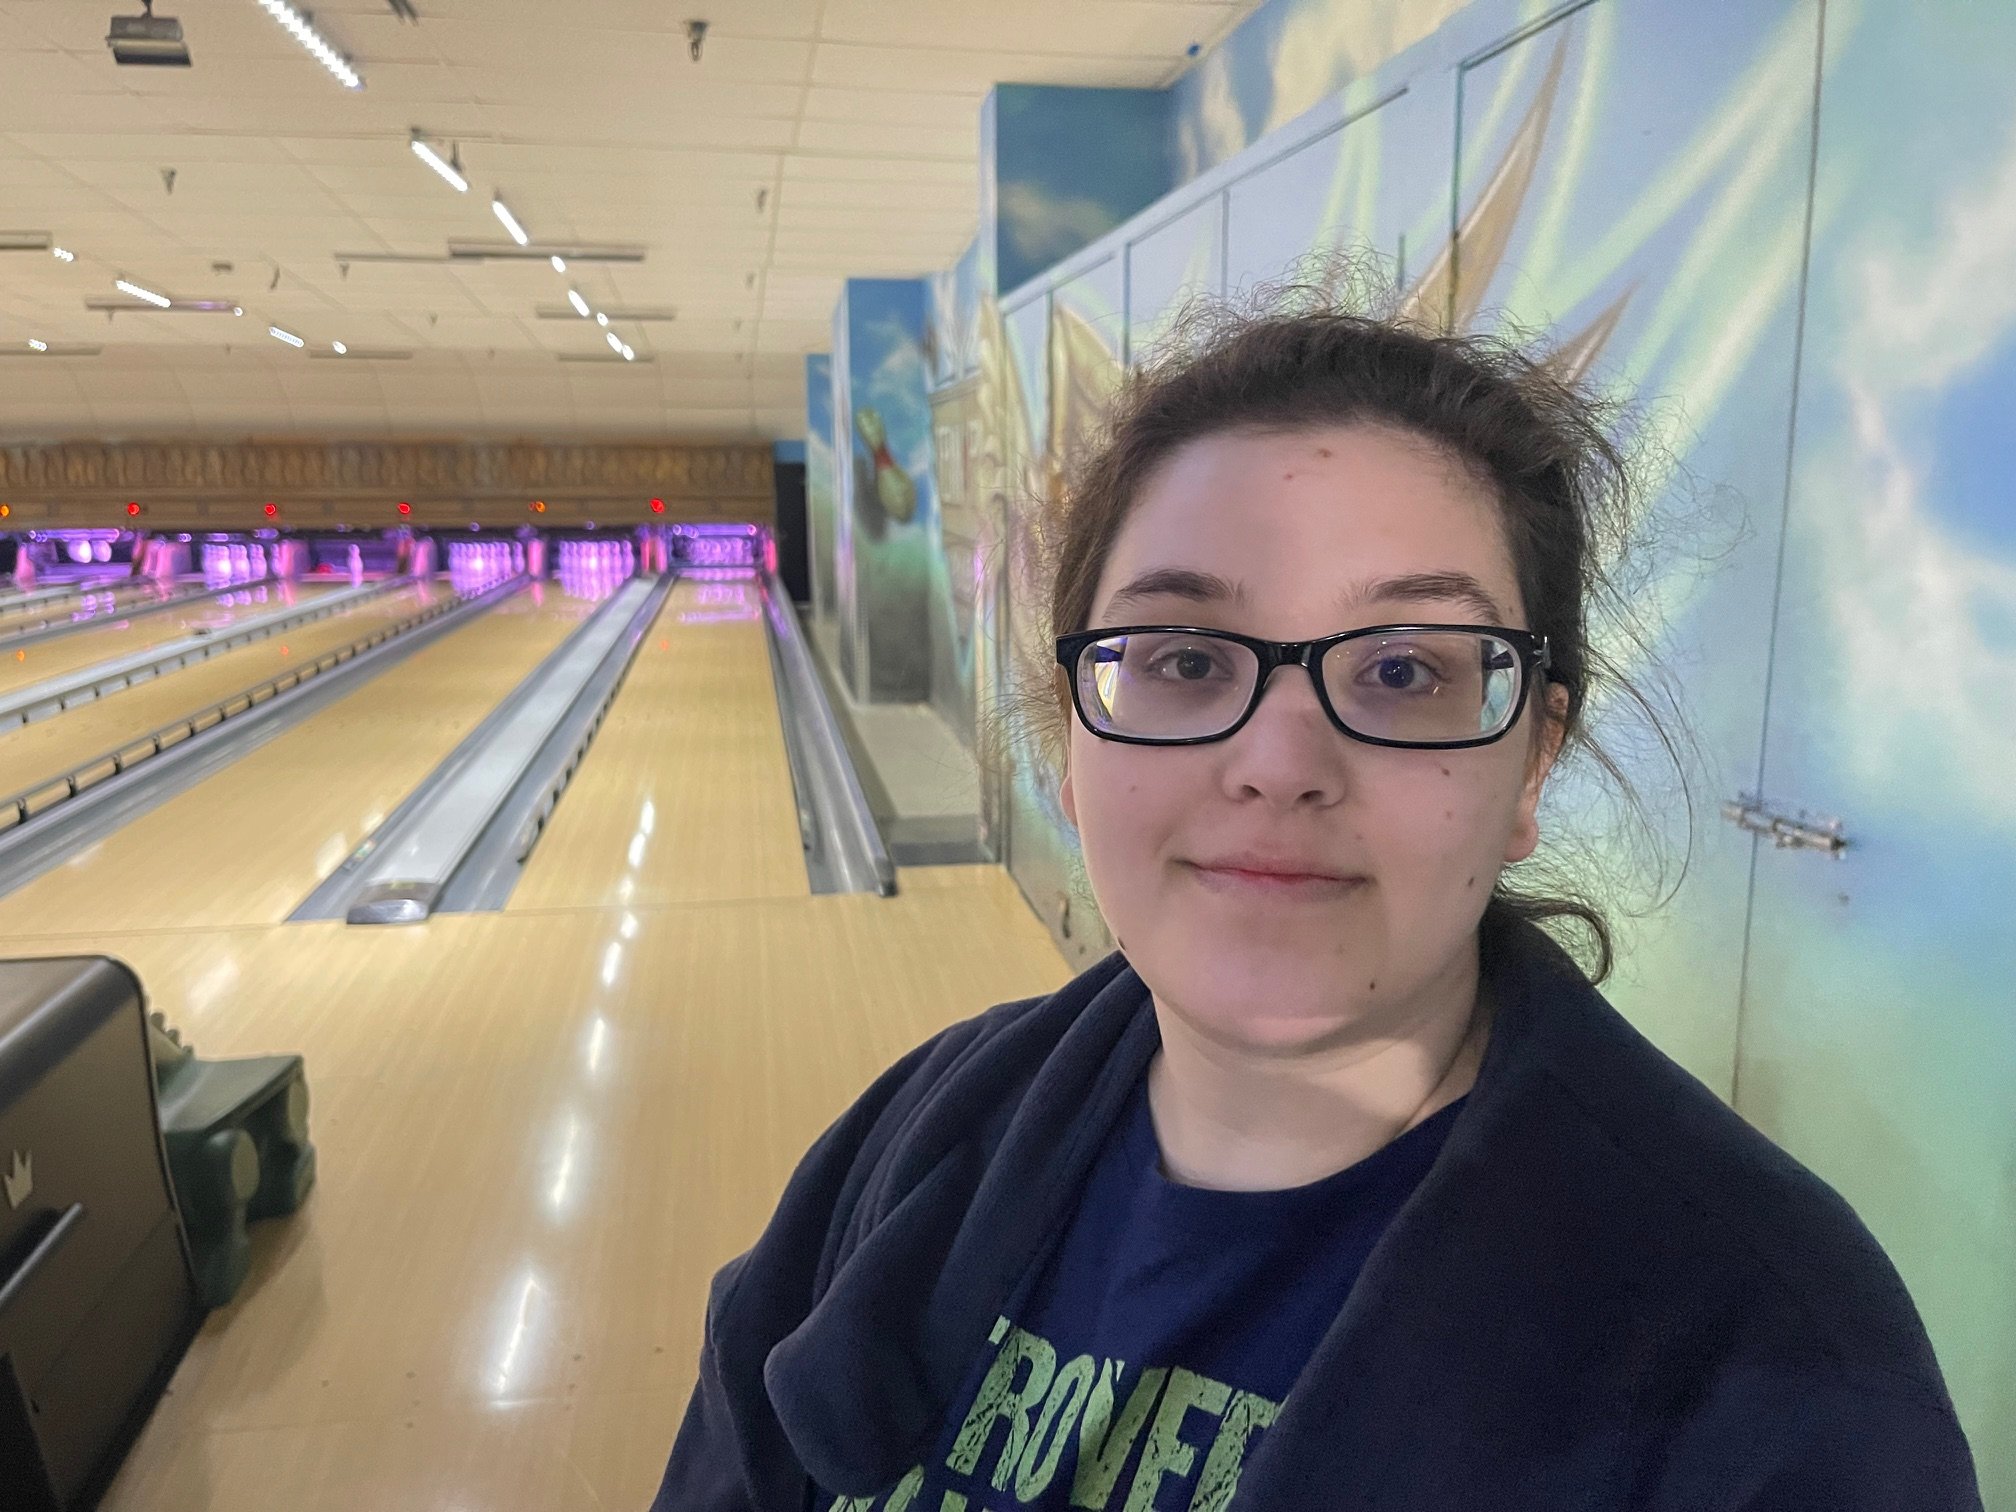 Erin-Mar23-24 Bowling.jpg